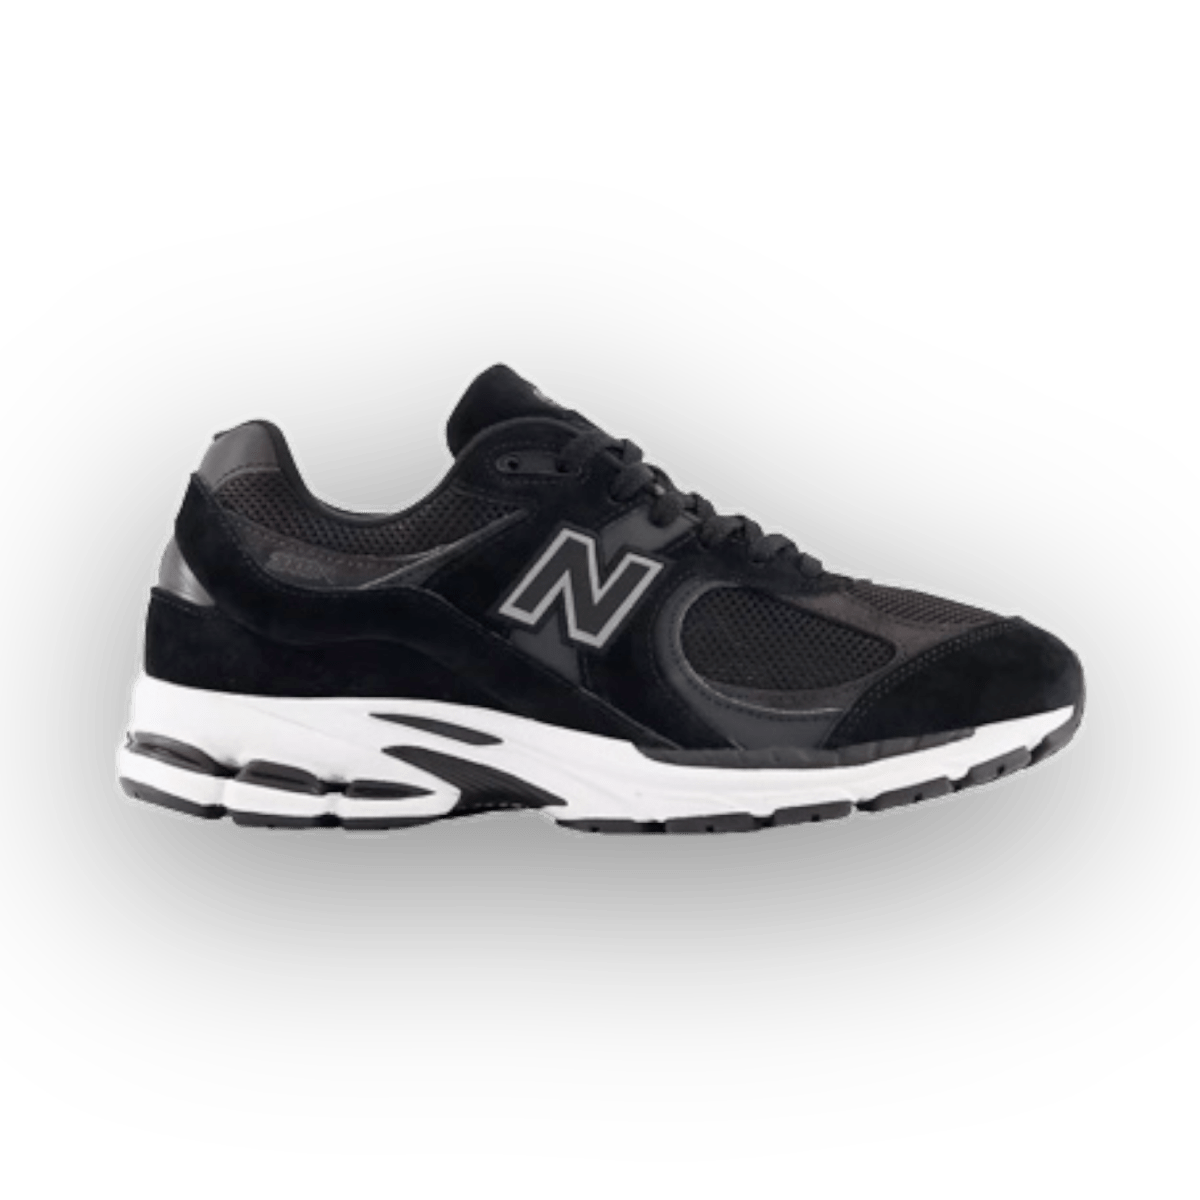 New Balance 2002R - Black - Low Sneaker - Jawns on Fire Sneakers & Streetwear